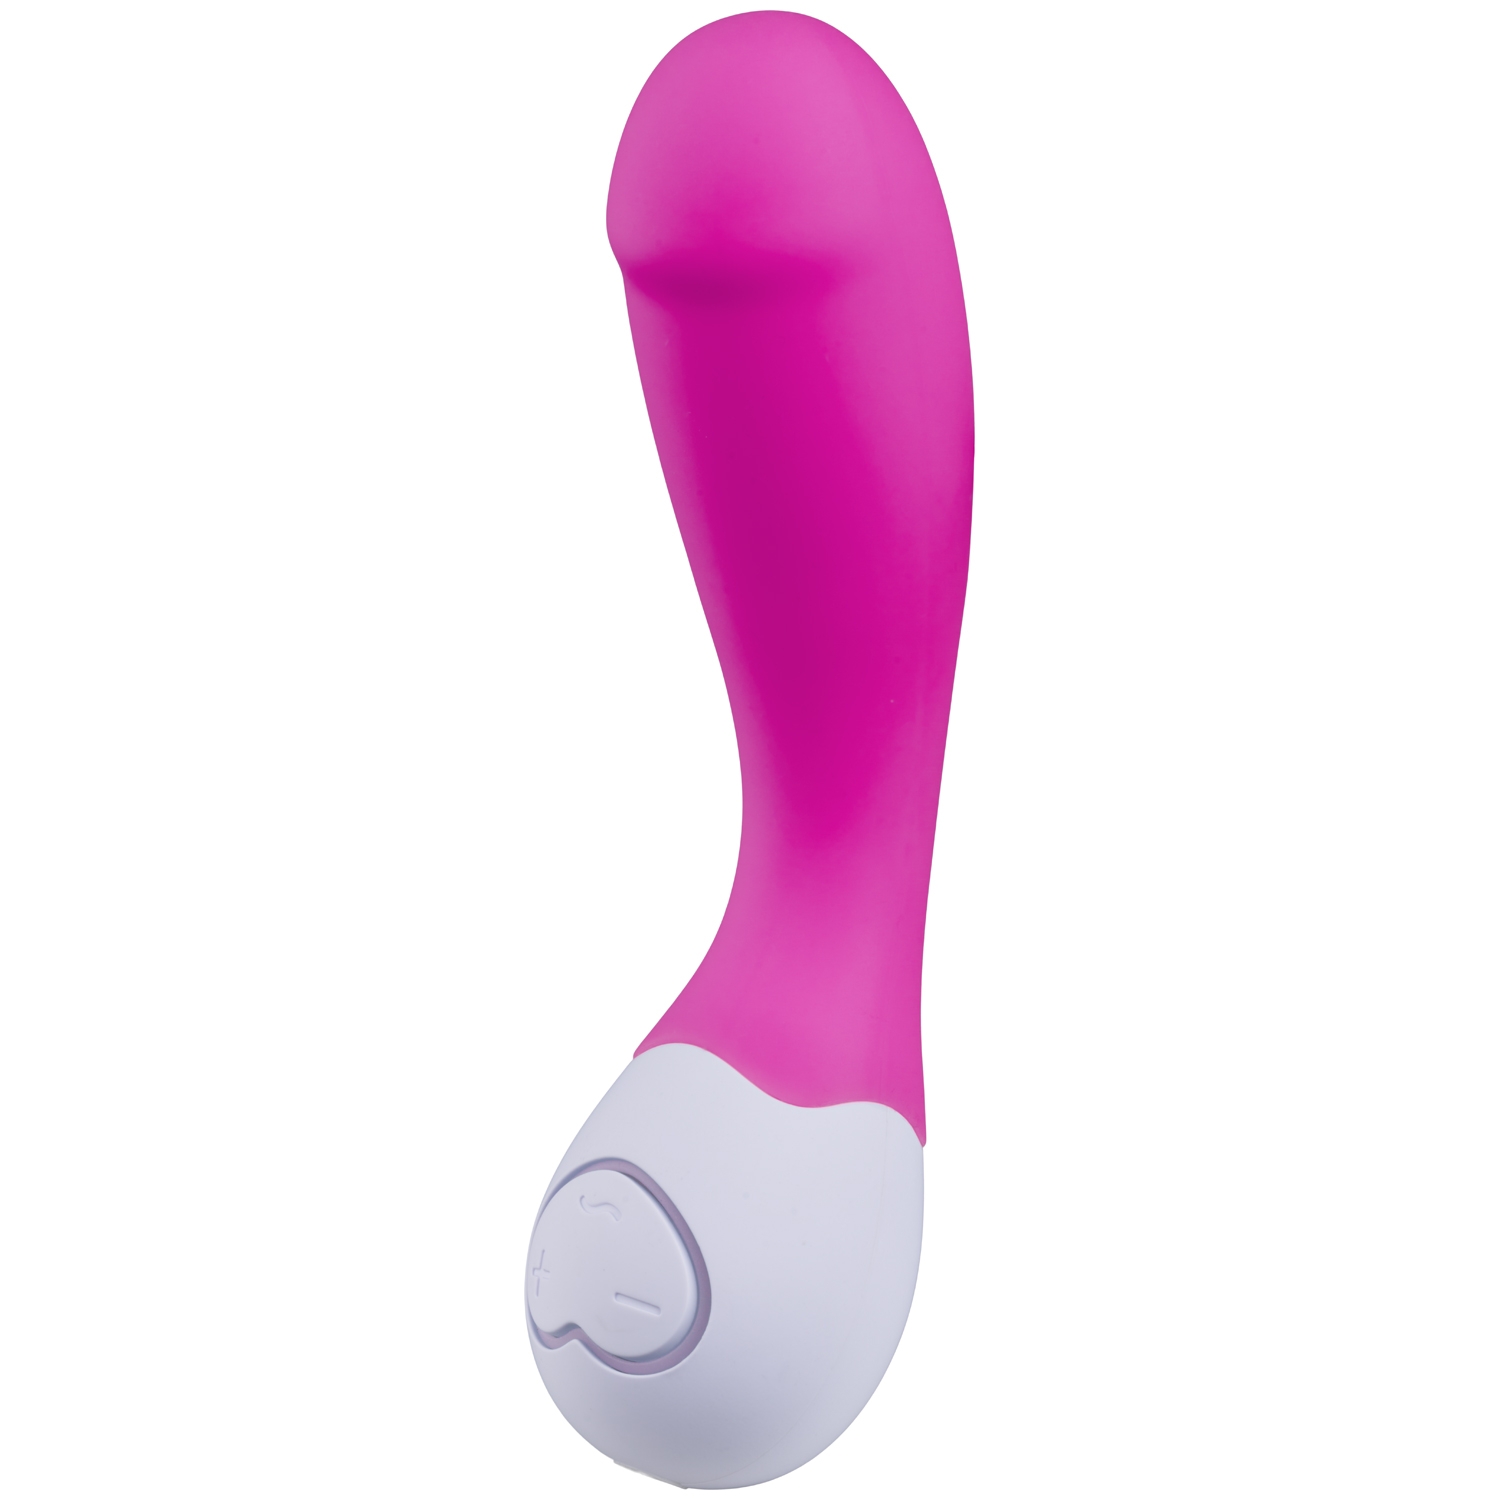 OhMiBod LoveLife Cuddle Mini G-punkts Vibrator - Pink thumbnail